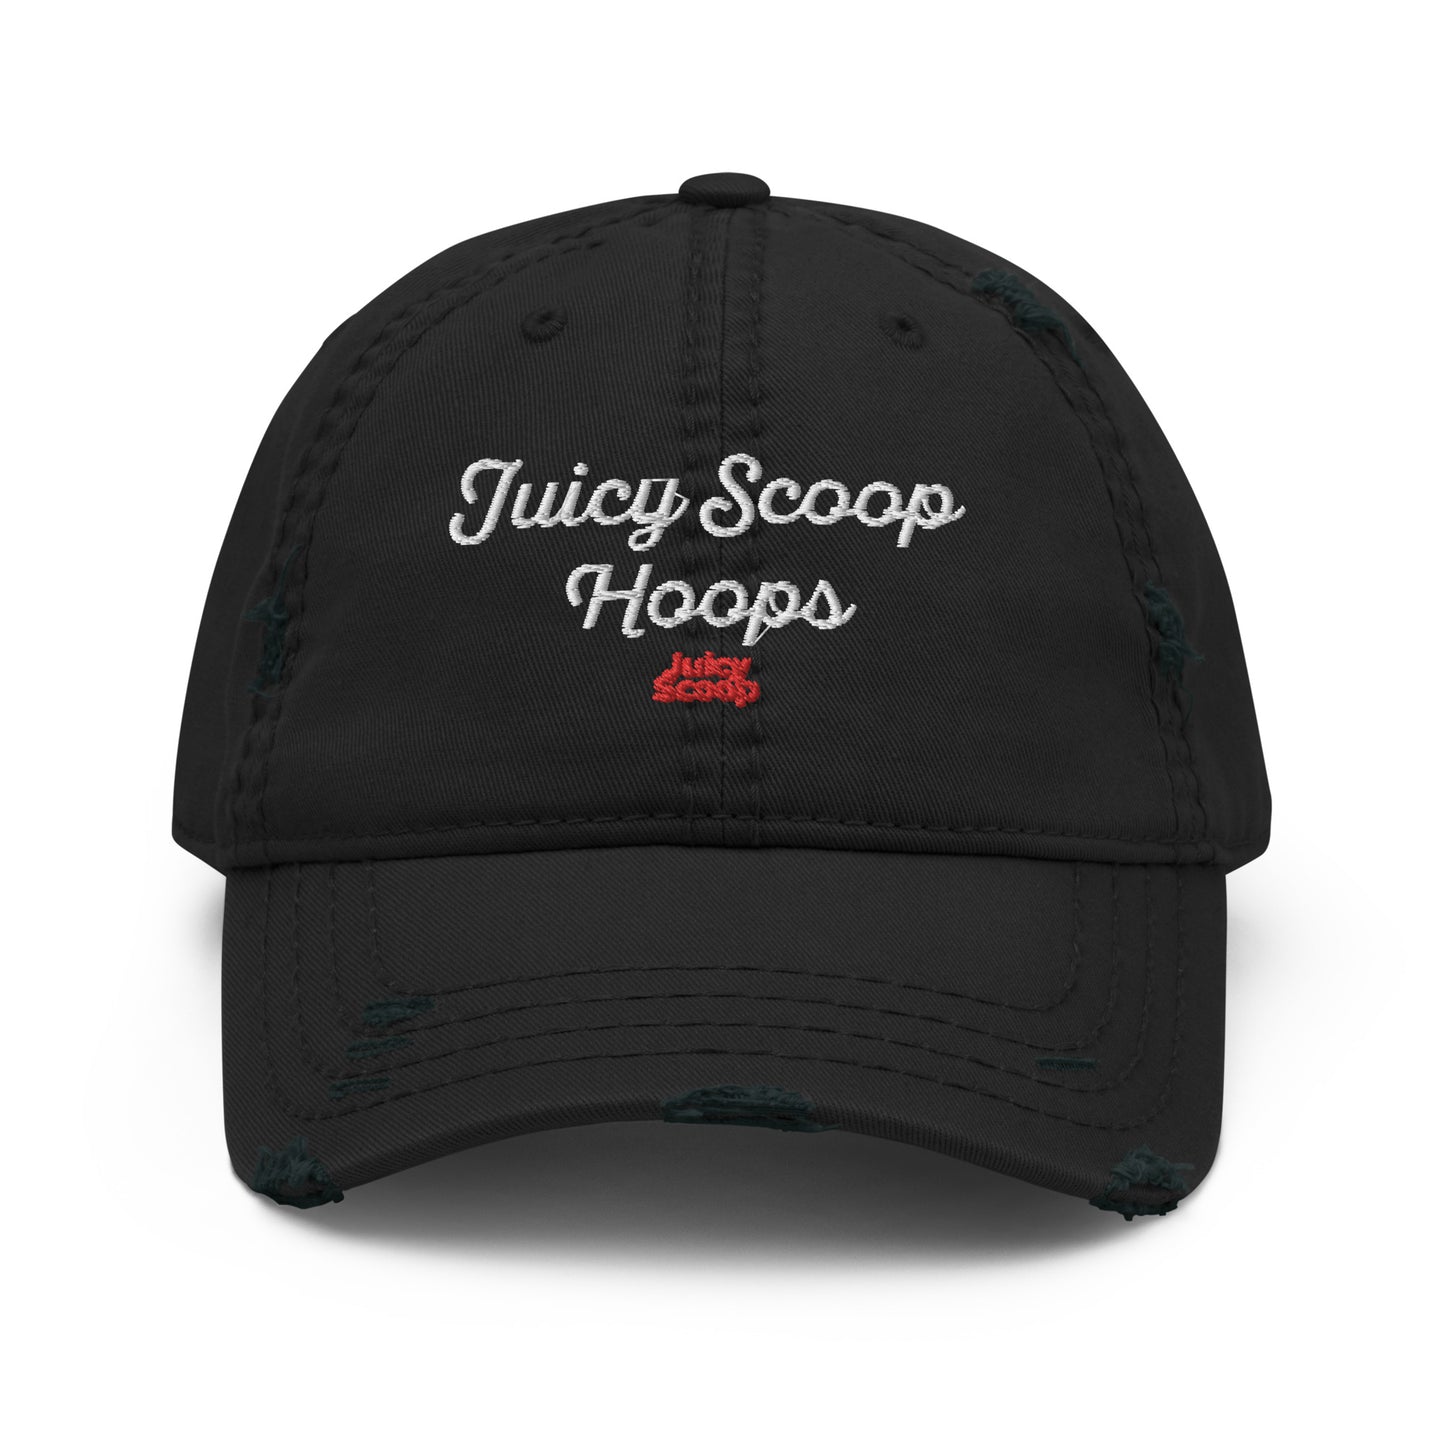 Juicy Scoop Hoops Distressed Dad Hat